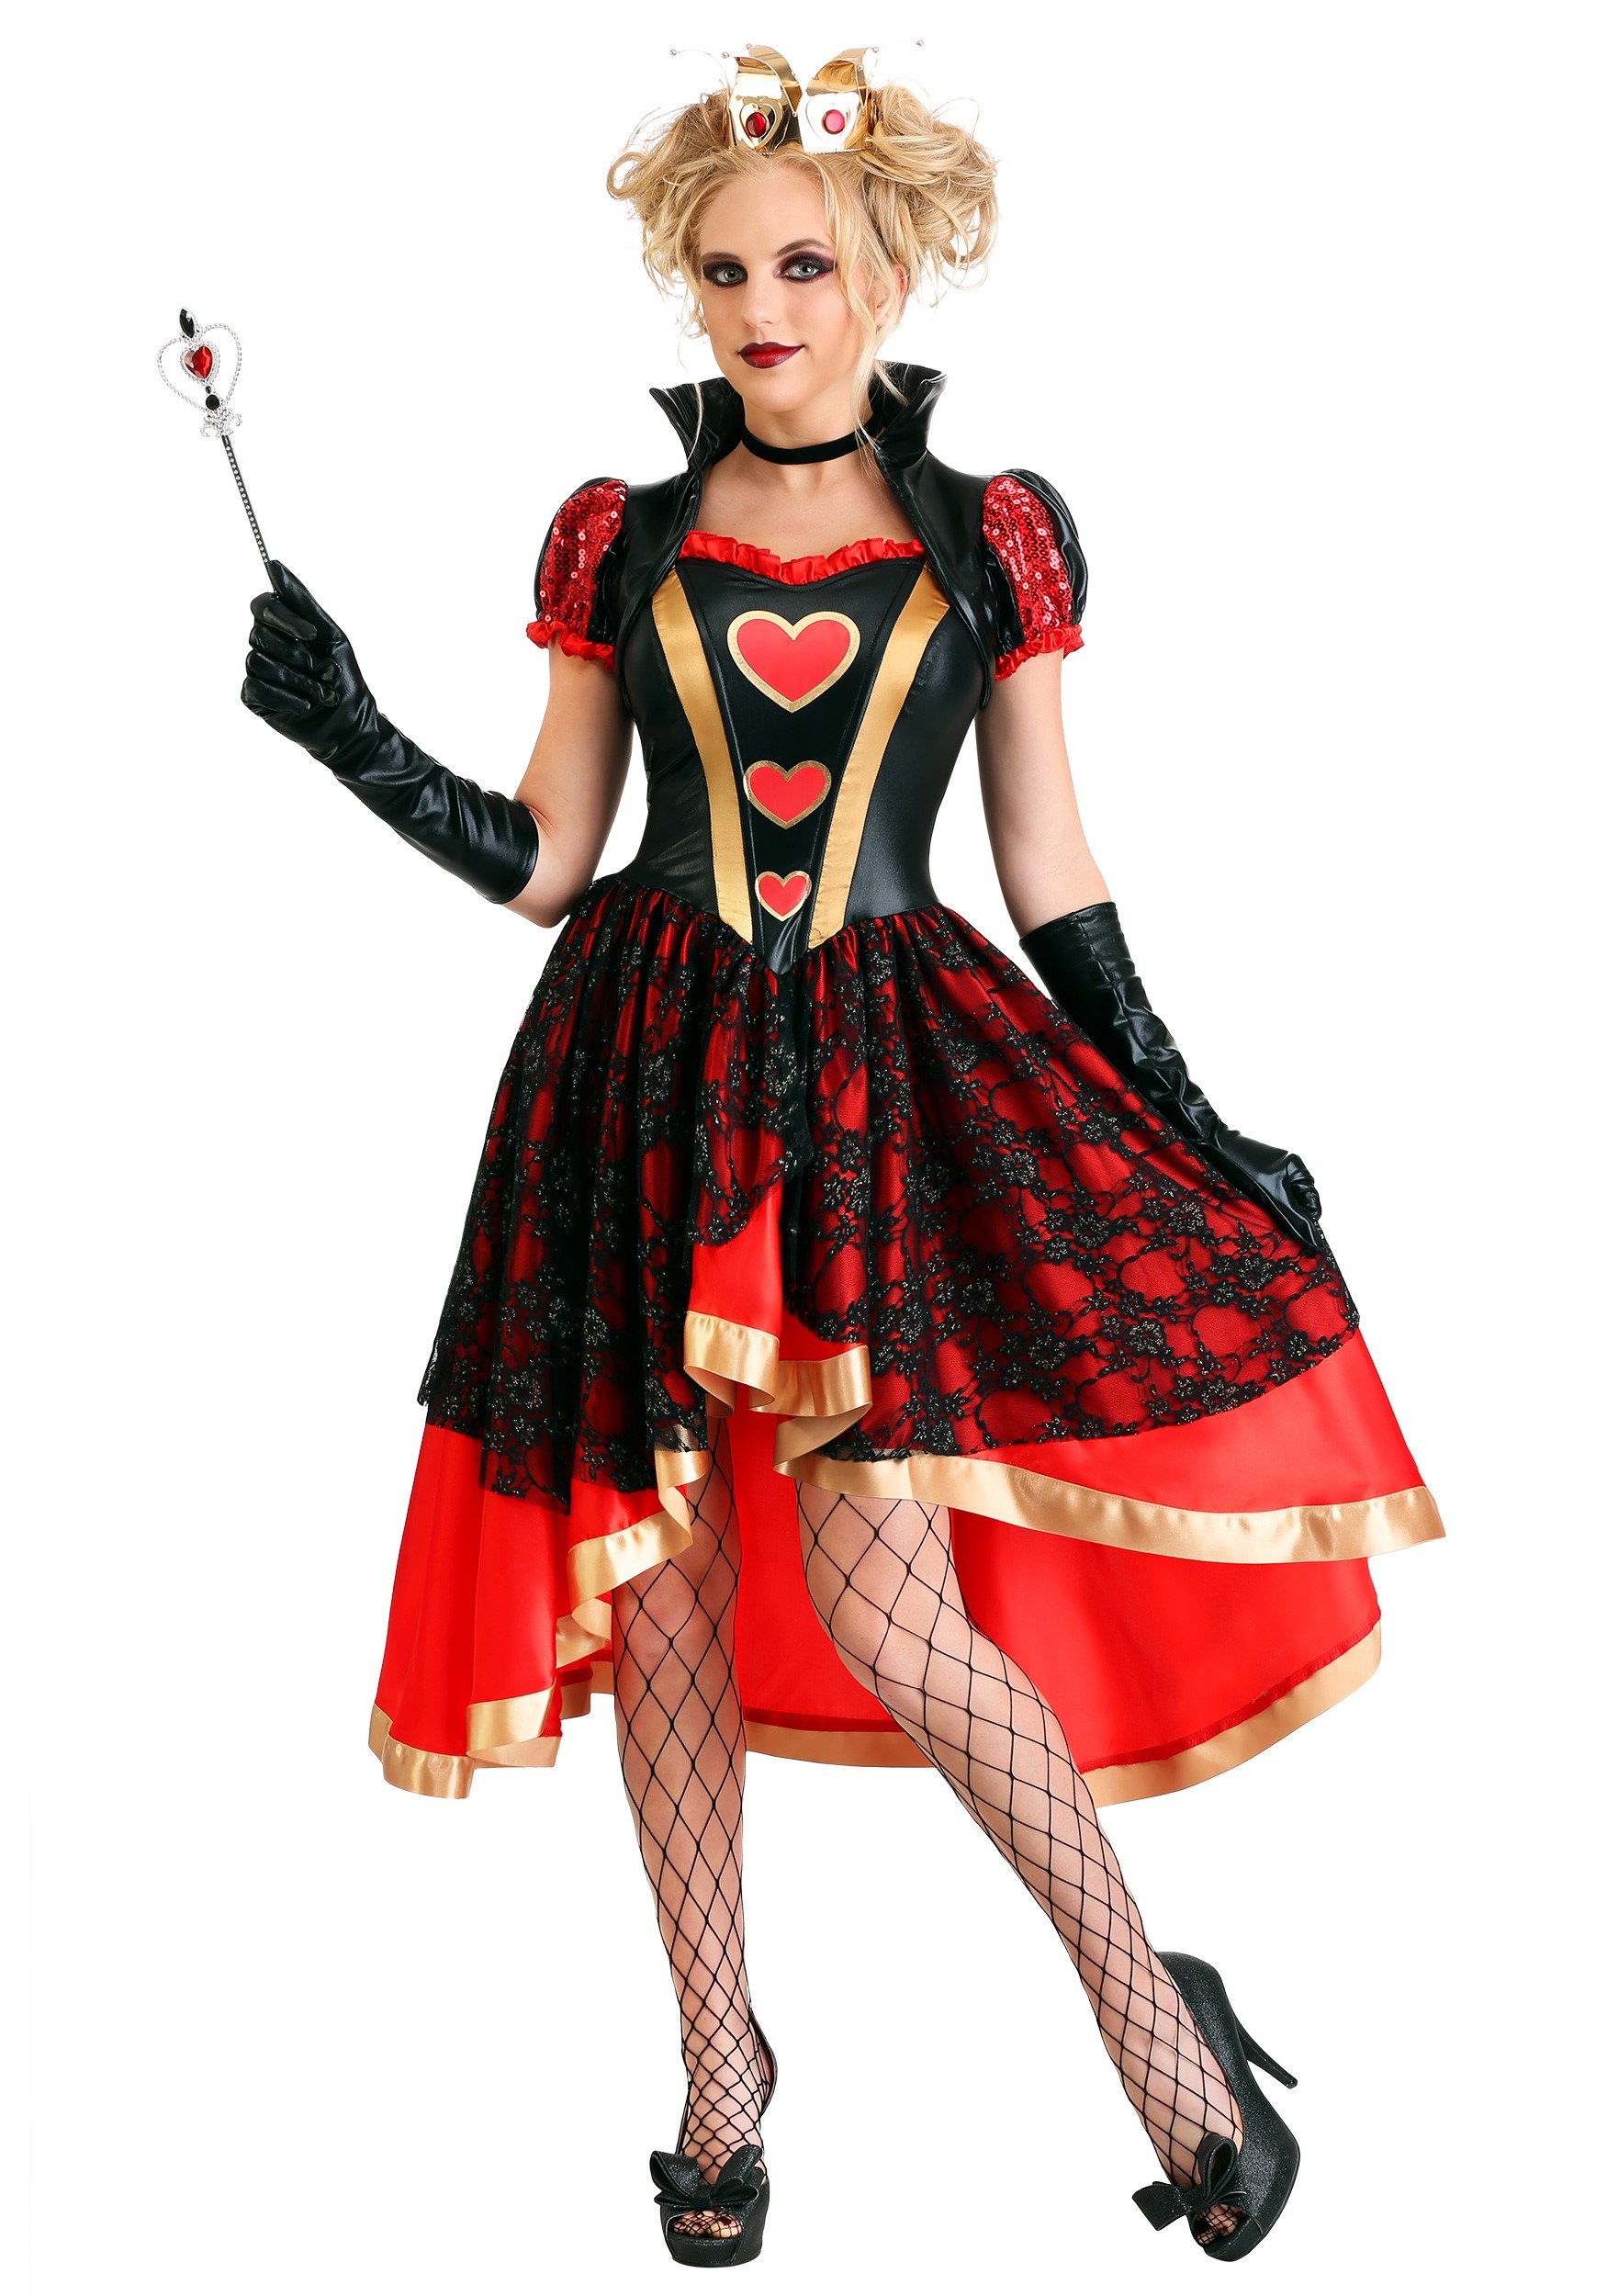 Buy > queen of hearts girls costume > in stock